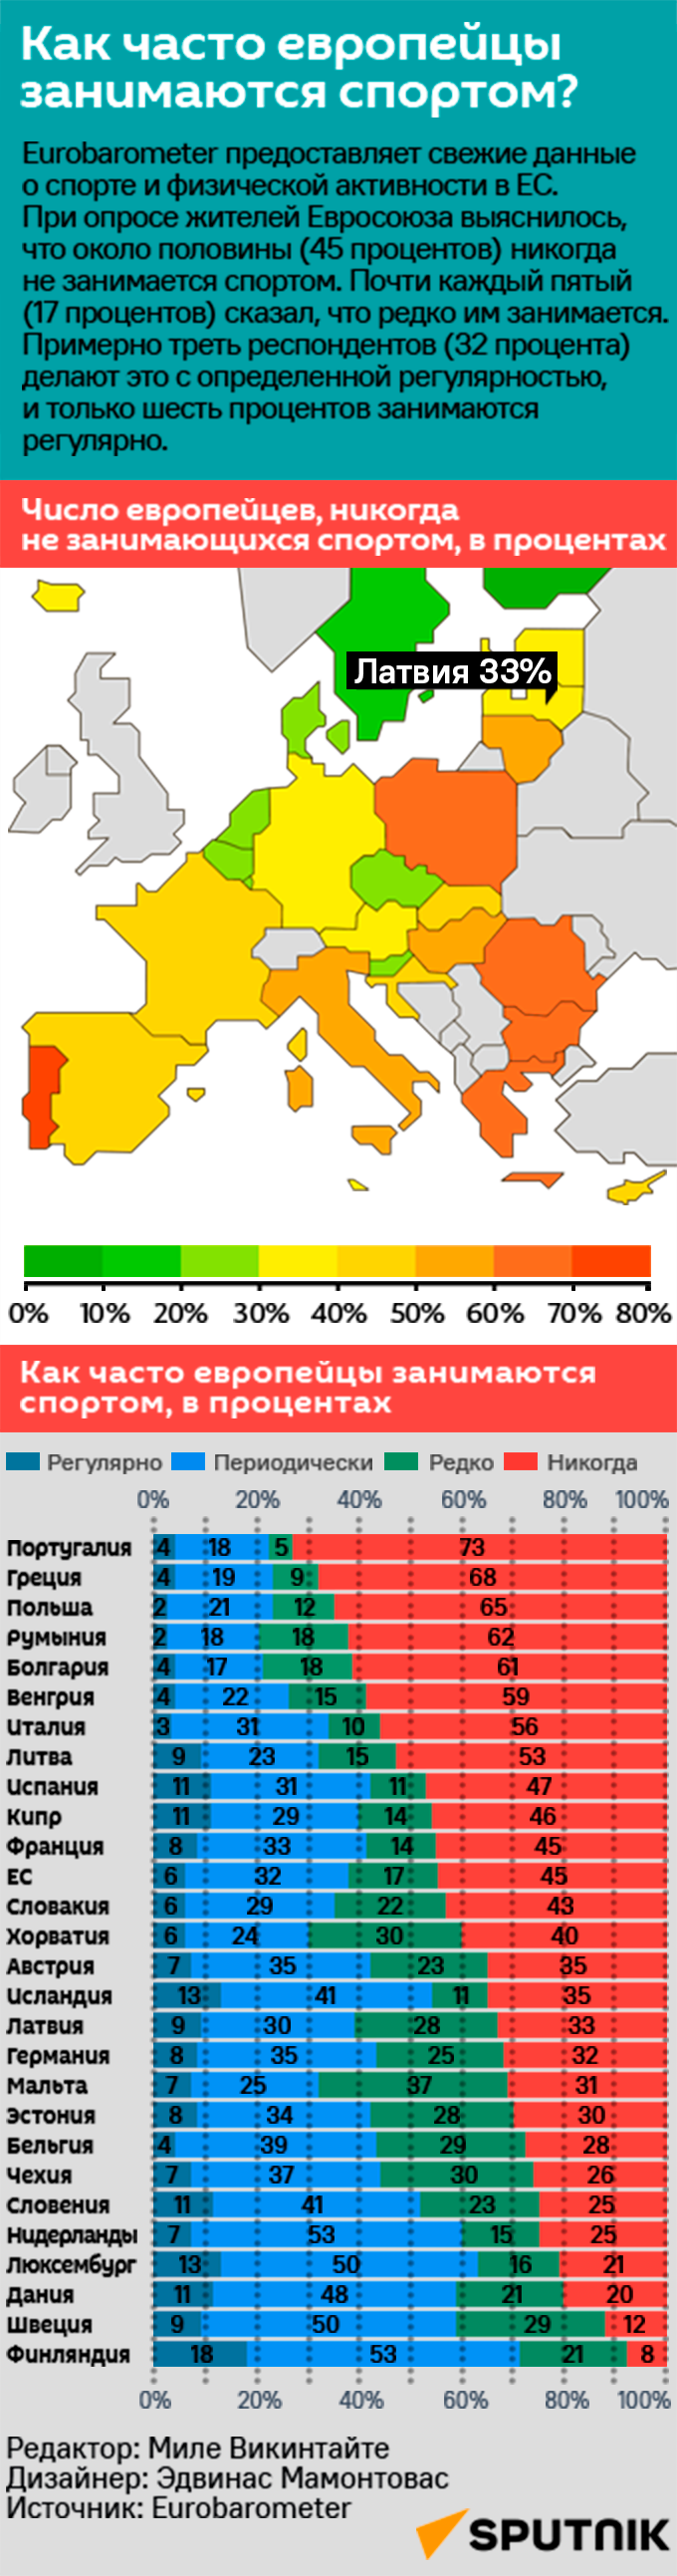 Как часто европейцы занимаются спортом? - Sputnik Латвия